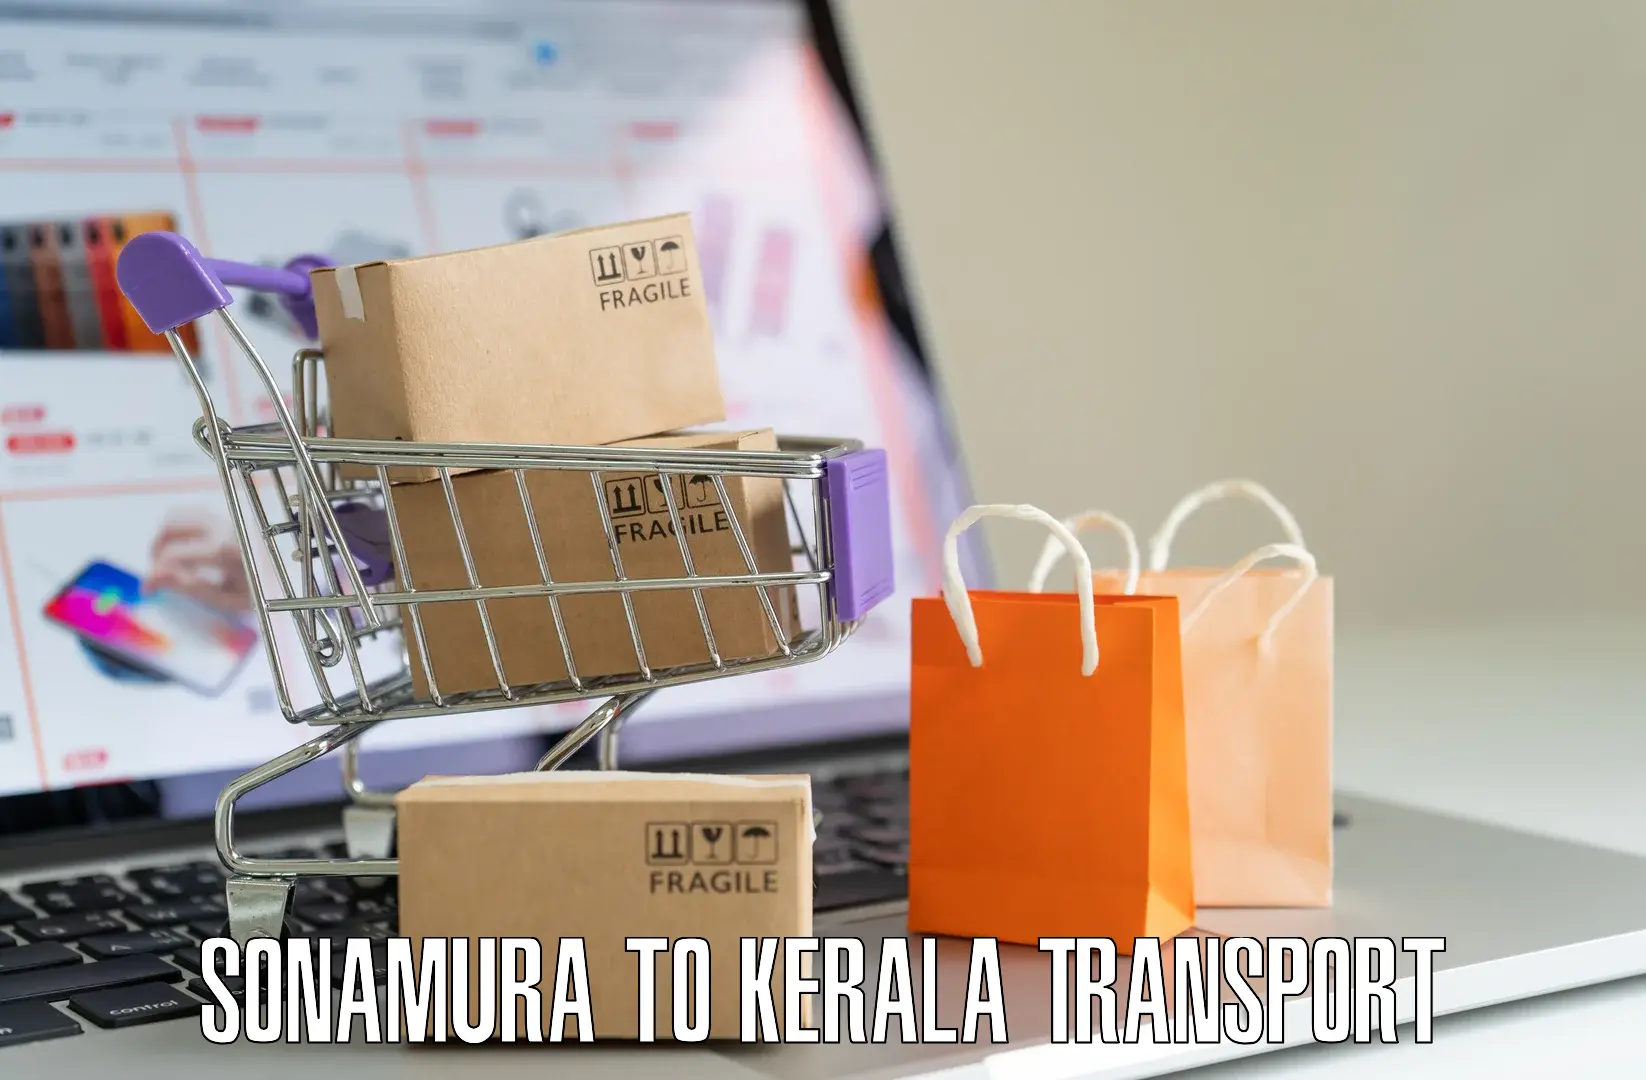 Online transport booking Sonamura to Karimba